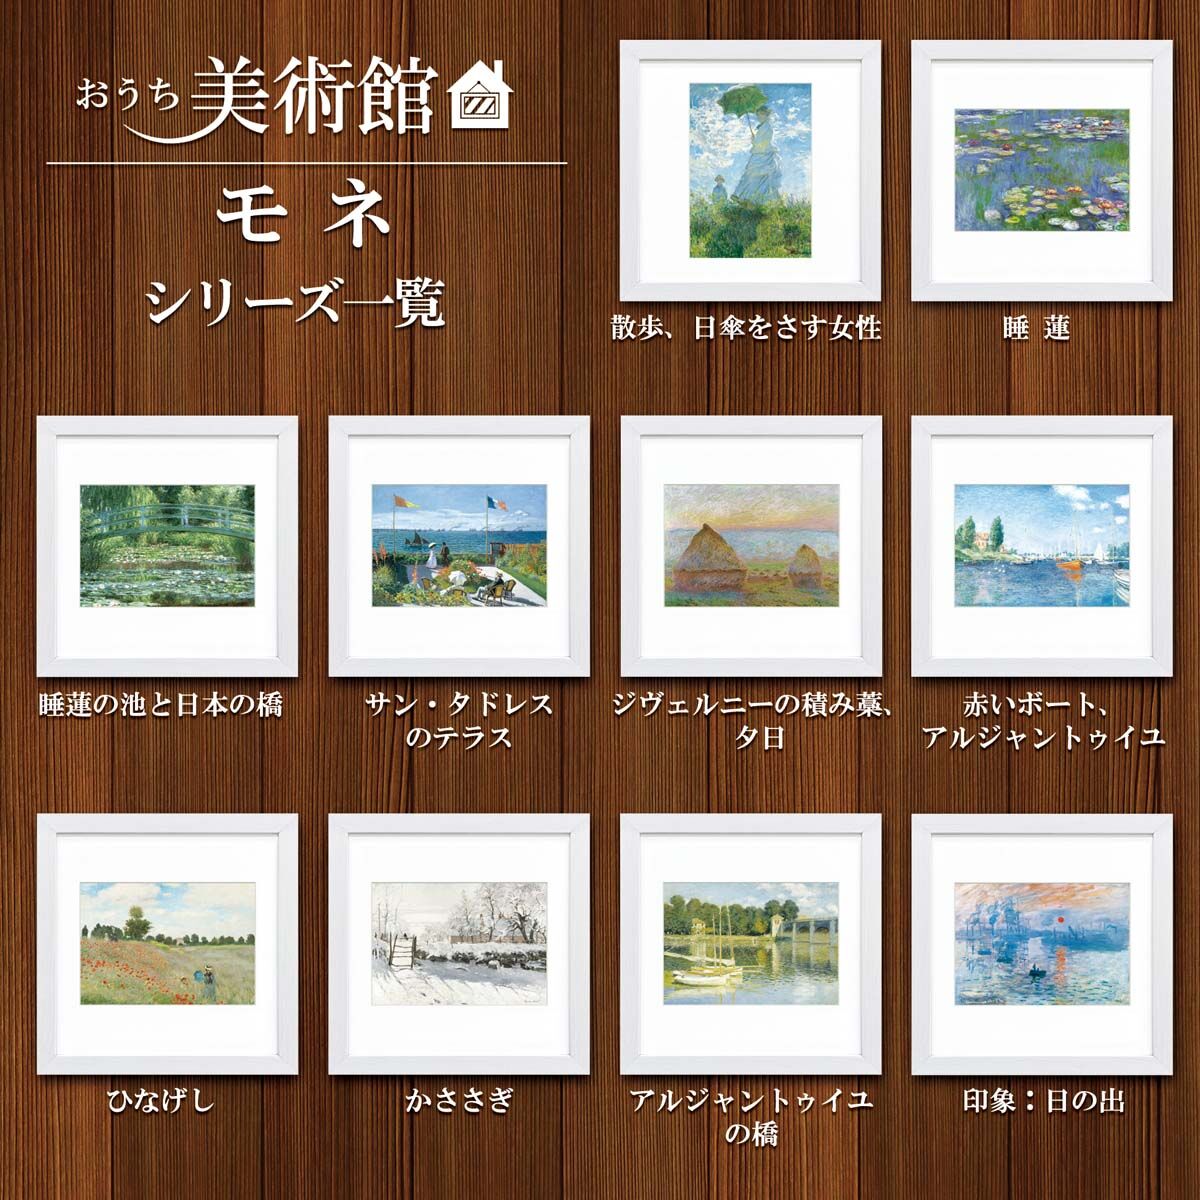 モネ「睡蓮の池と日本の橋」美術工芸版画 世界の名画 額付き 絵画 洋画 